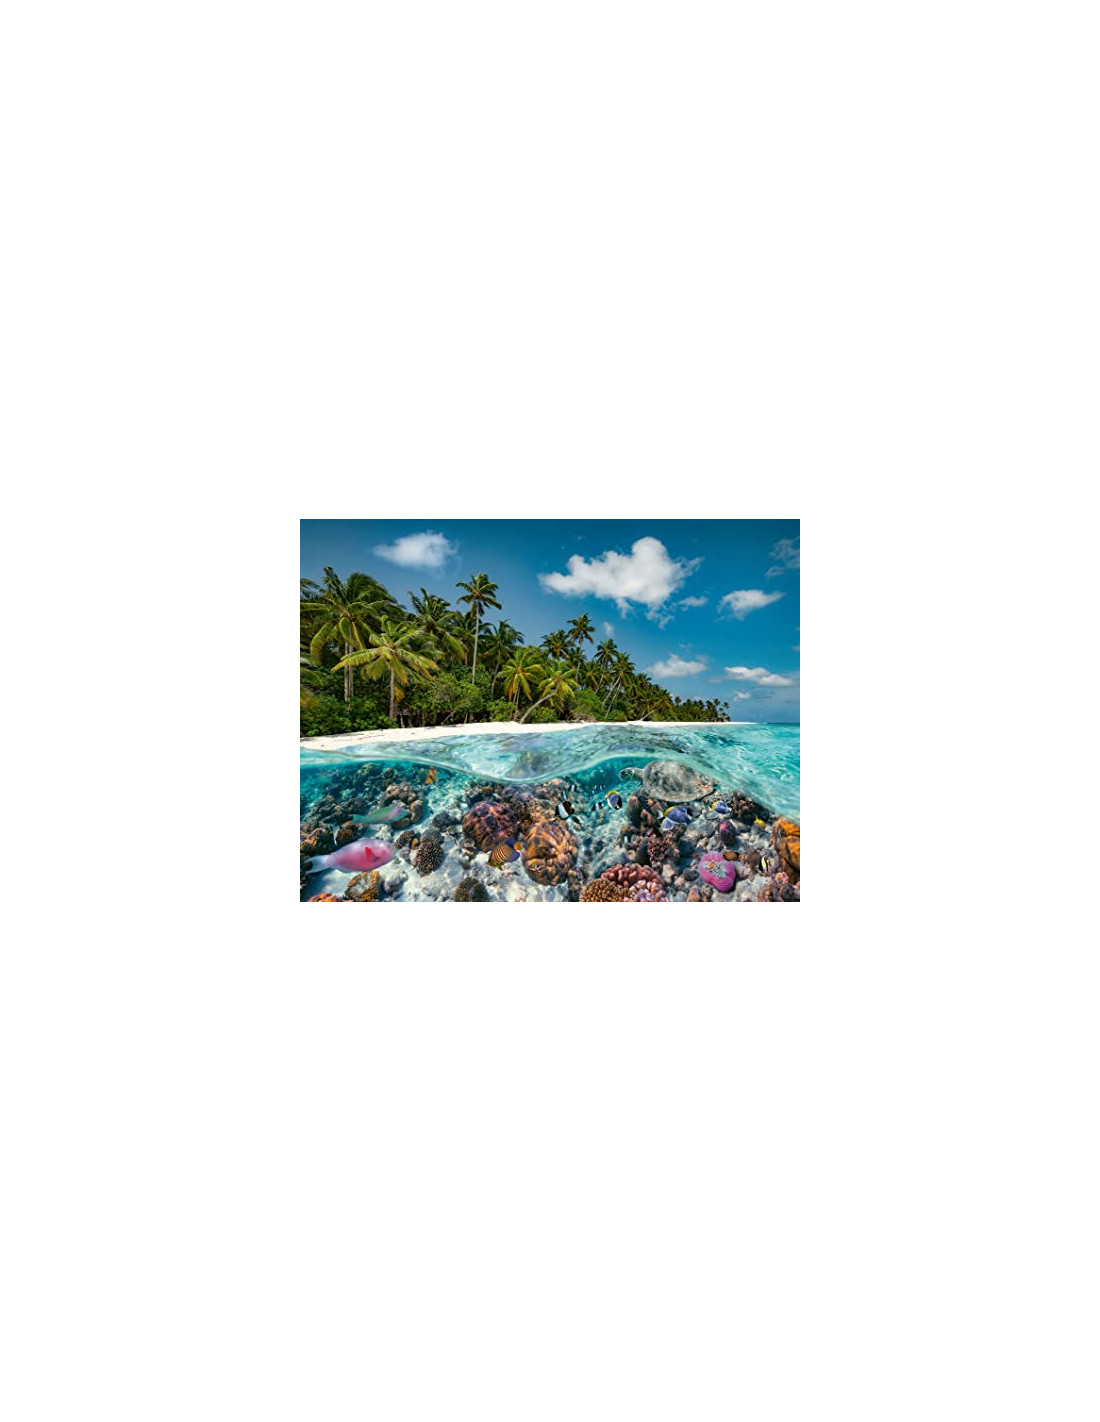 Puzzle Adulte - Une plongée aux Maldives 2000 pièces